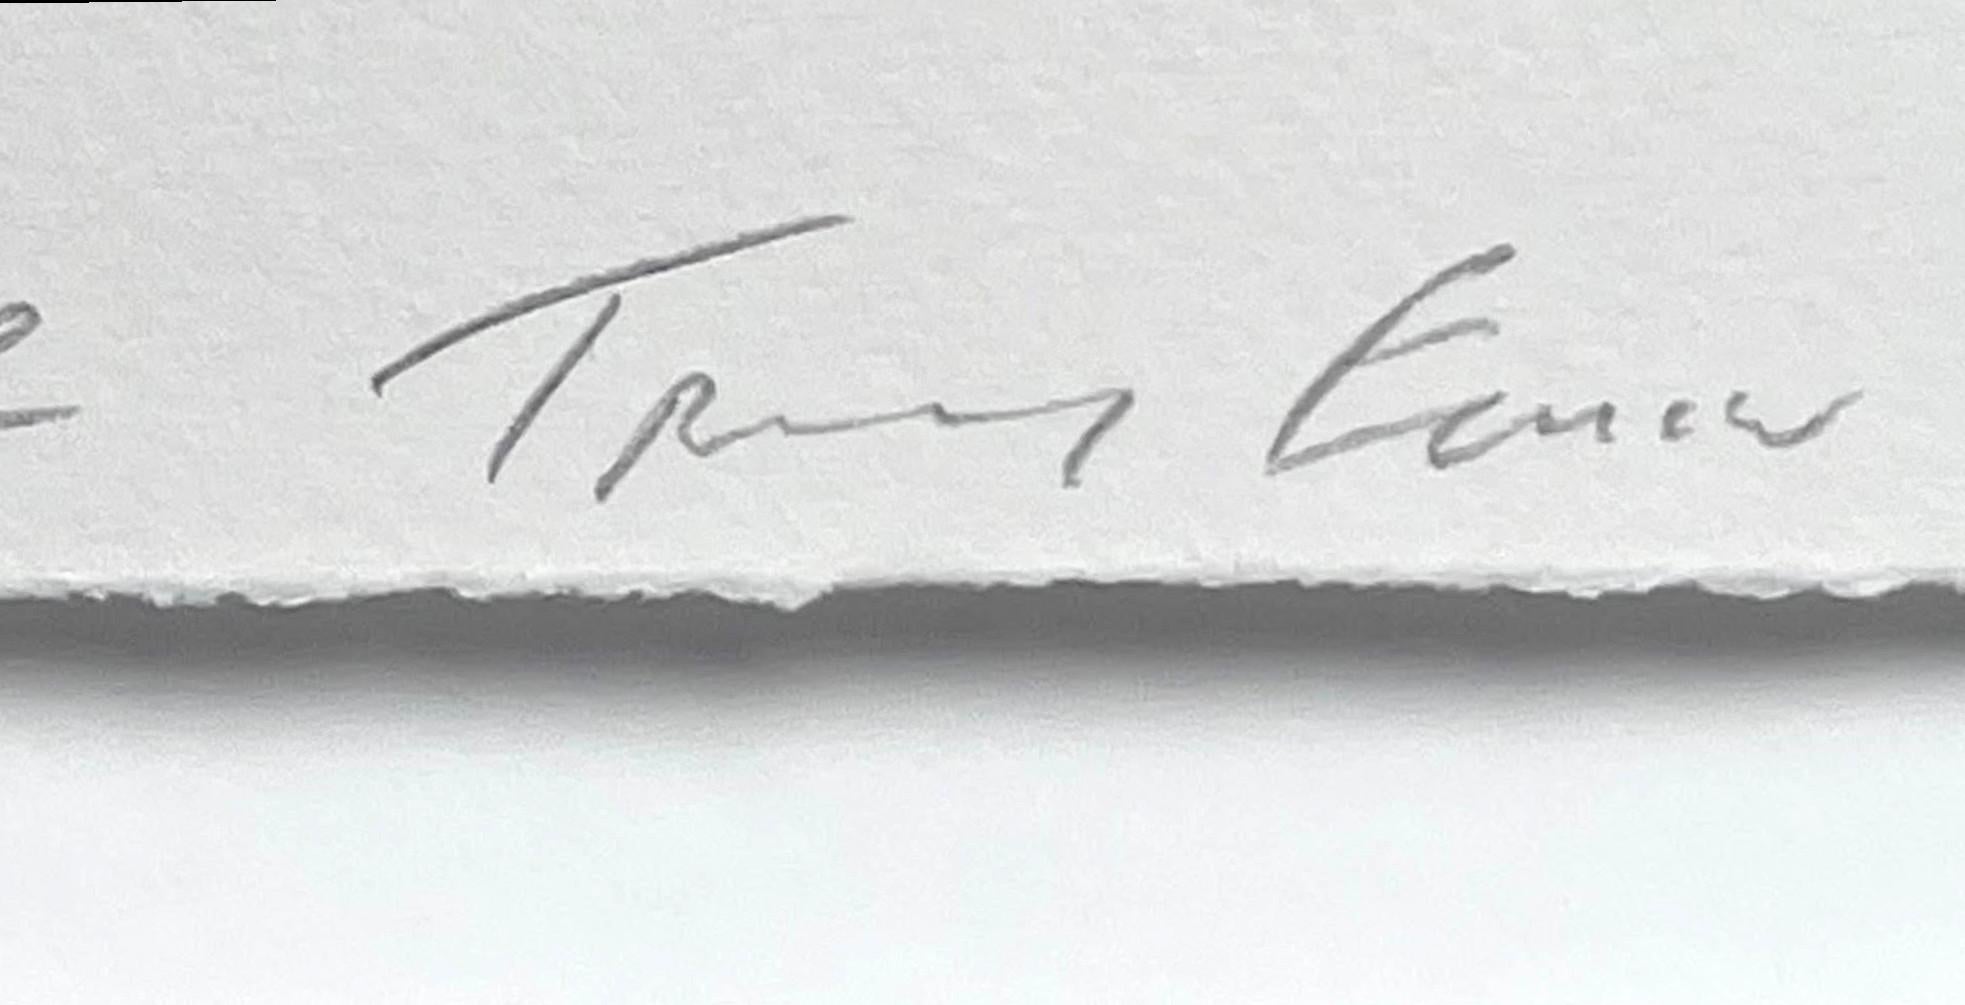 Tracey Emin
Auf Wiedersehen, 2018
Polymertiefdruck auf Somerset 300gsm
Mit Bleistift signiert, betitelt, datiert und nummeriert 71/100 von Tracey Emin auf der Vorderseite
Inklusive Rahmen:
Elegant schwebend und gerahmt in einem weißen Holzrahmen mit